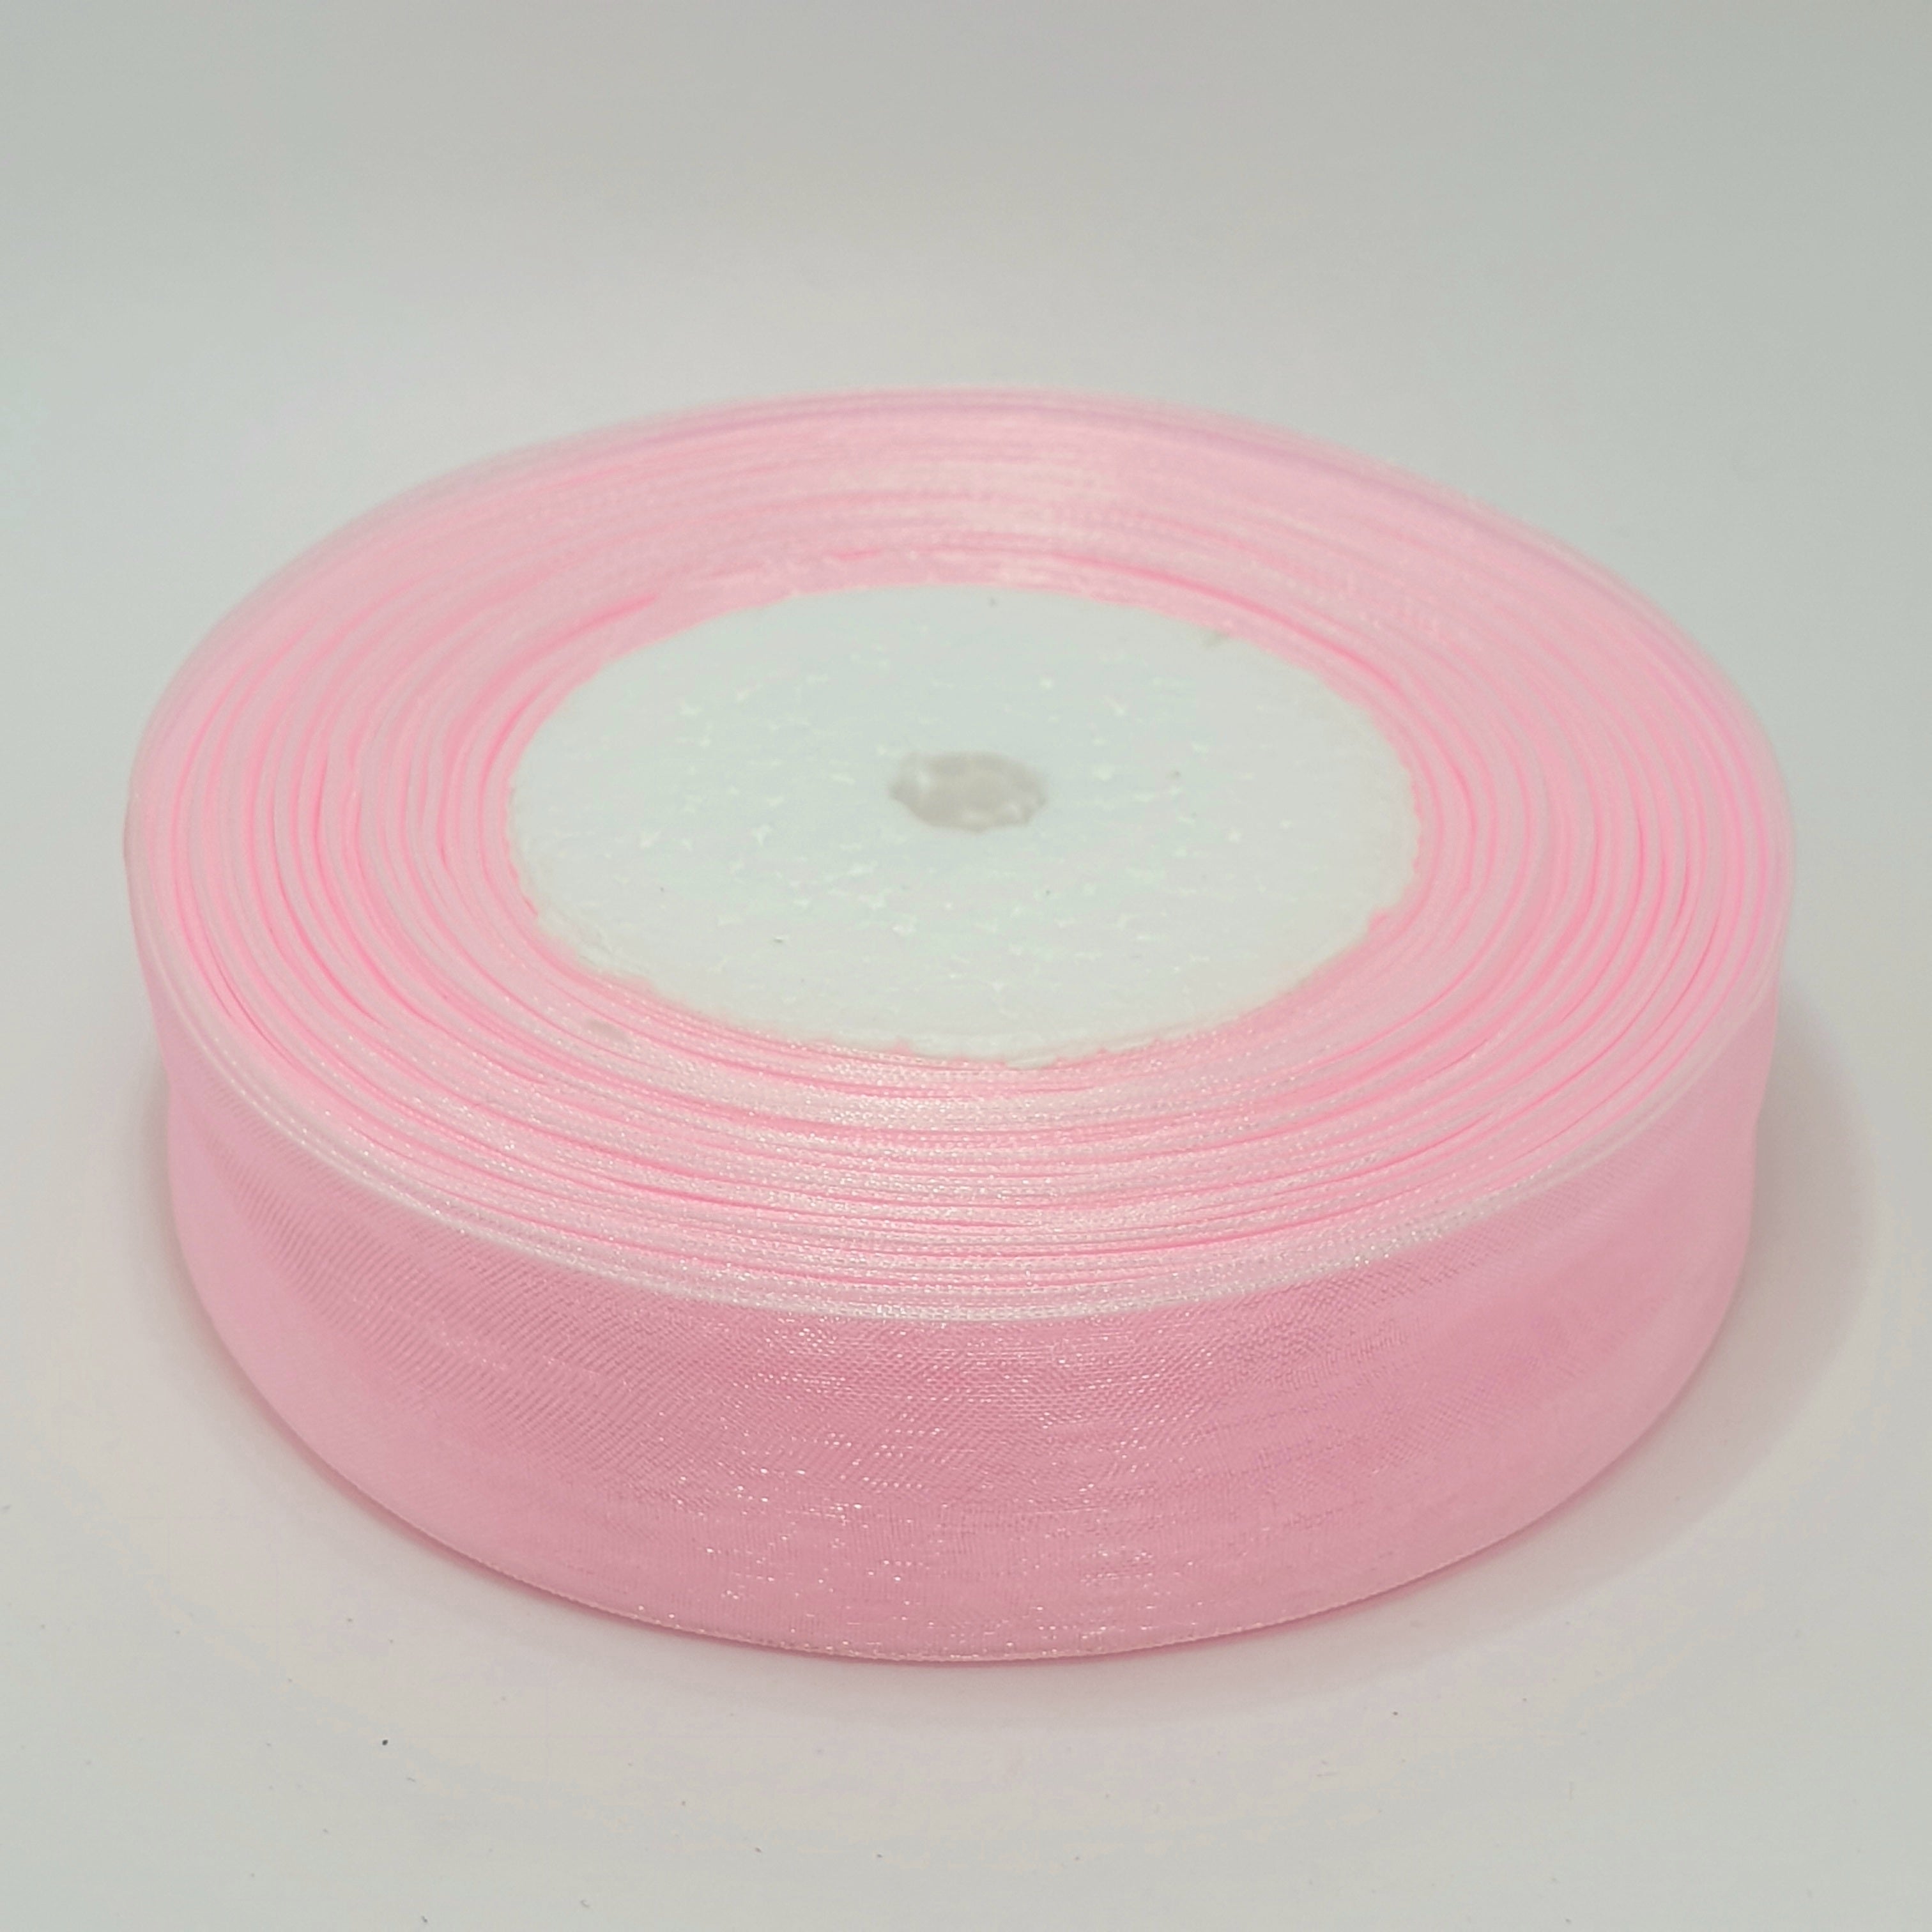 MajorCrafts 25mm 45metres Sheer Organza Fabric Ribbon Roll Pink Shade R1043